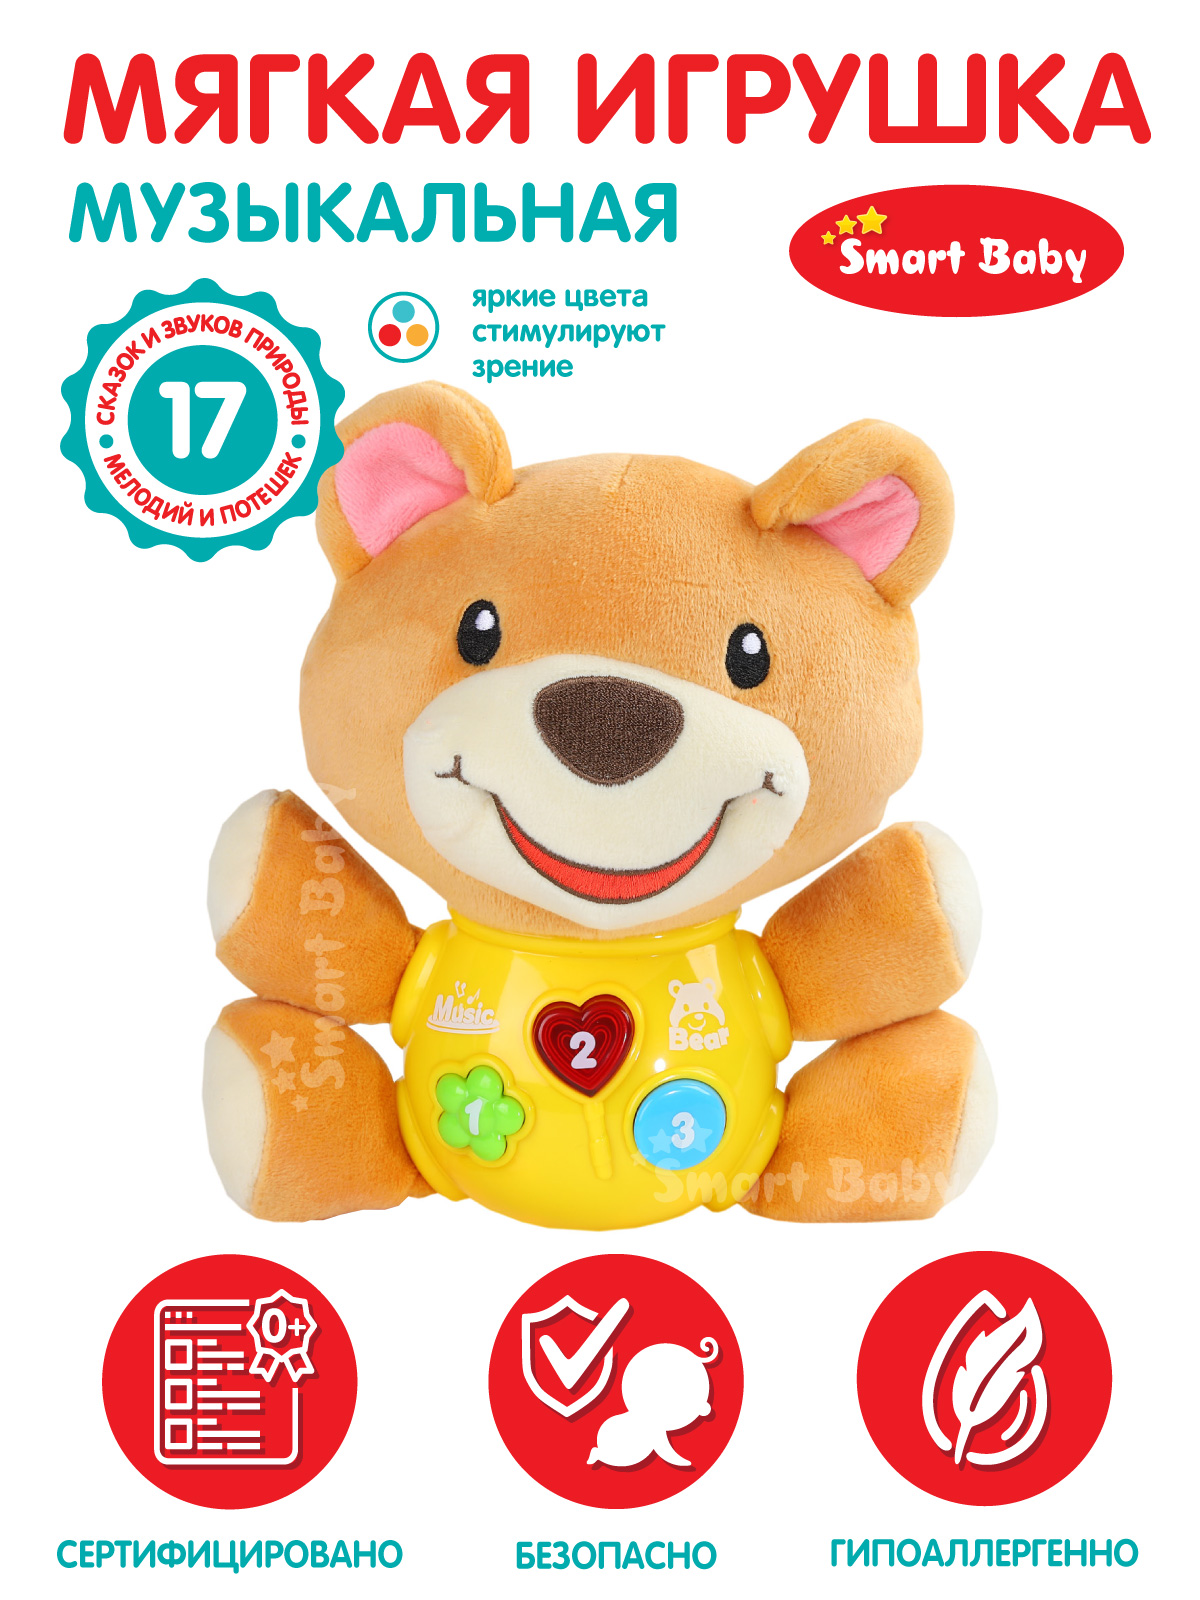 Развивающая мягкая игрушка Smart Baby Мишка ТМ Smart Baby, свет, звук, JB0334072 развивающая игрушка маша и медведь звук свет в коробке